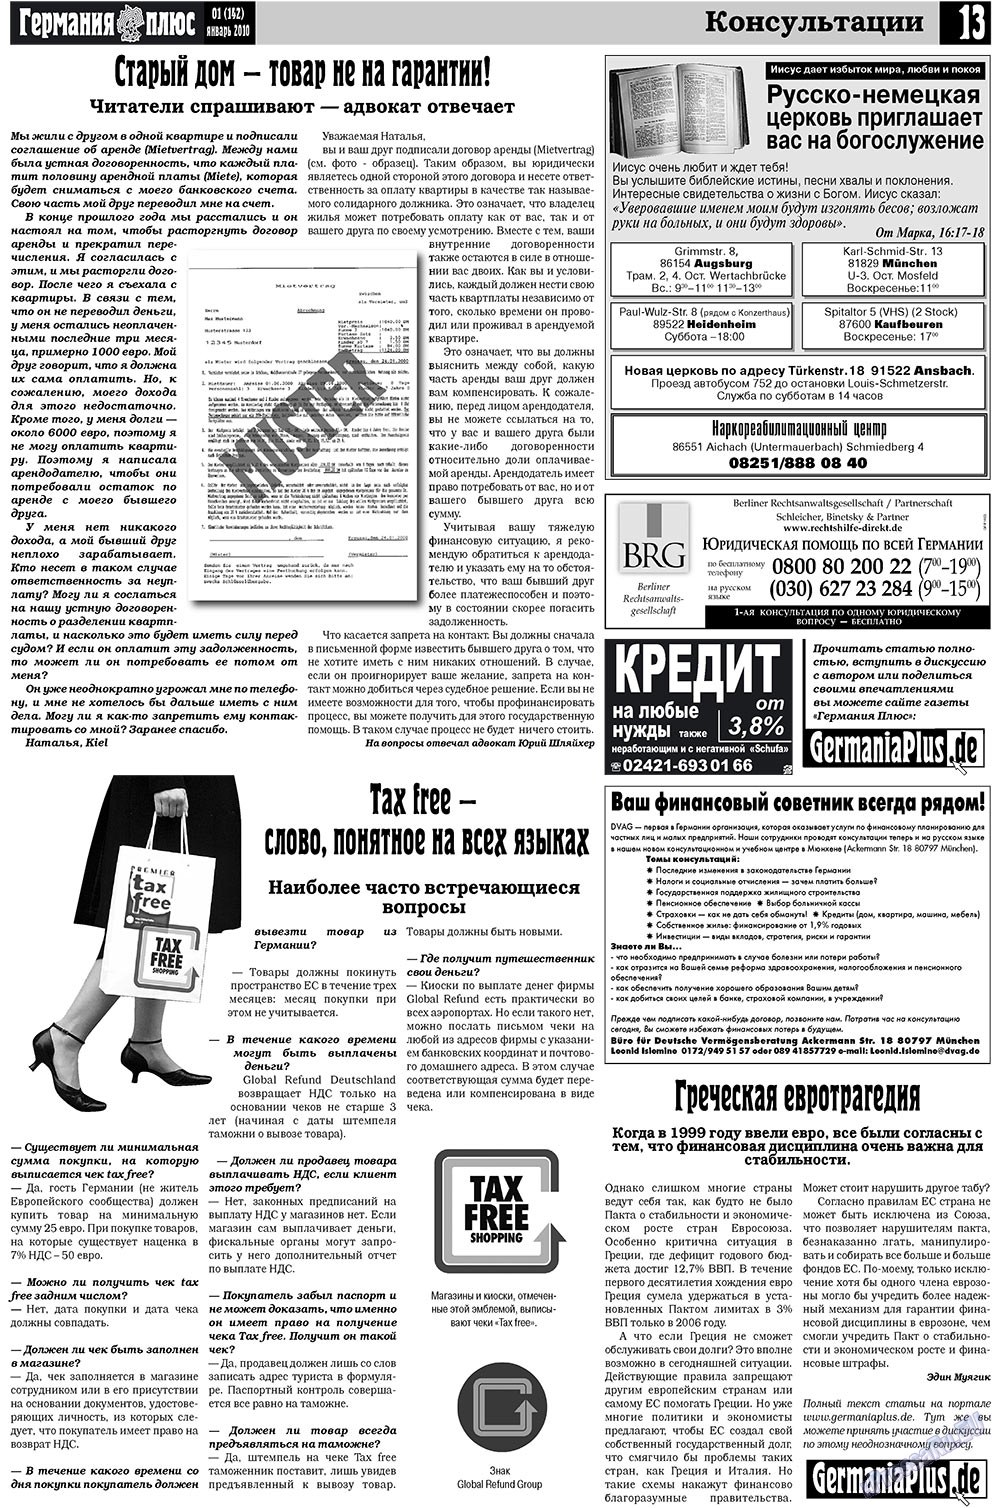 Германия плюс (газета). 2010 год, номер 1, стр. 13